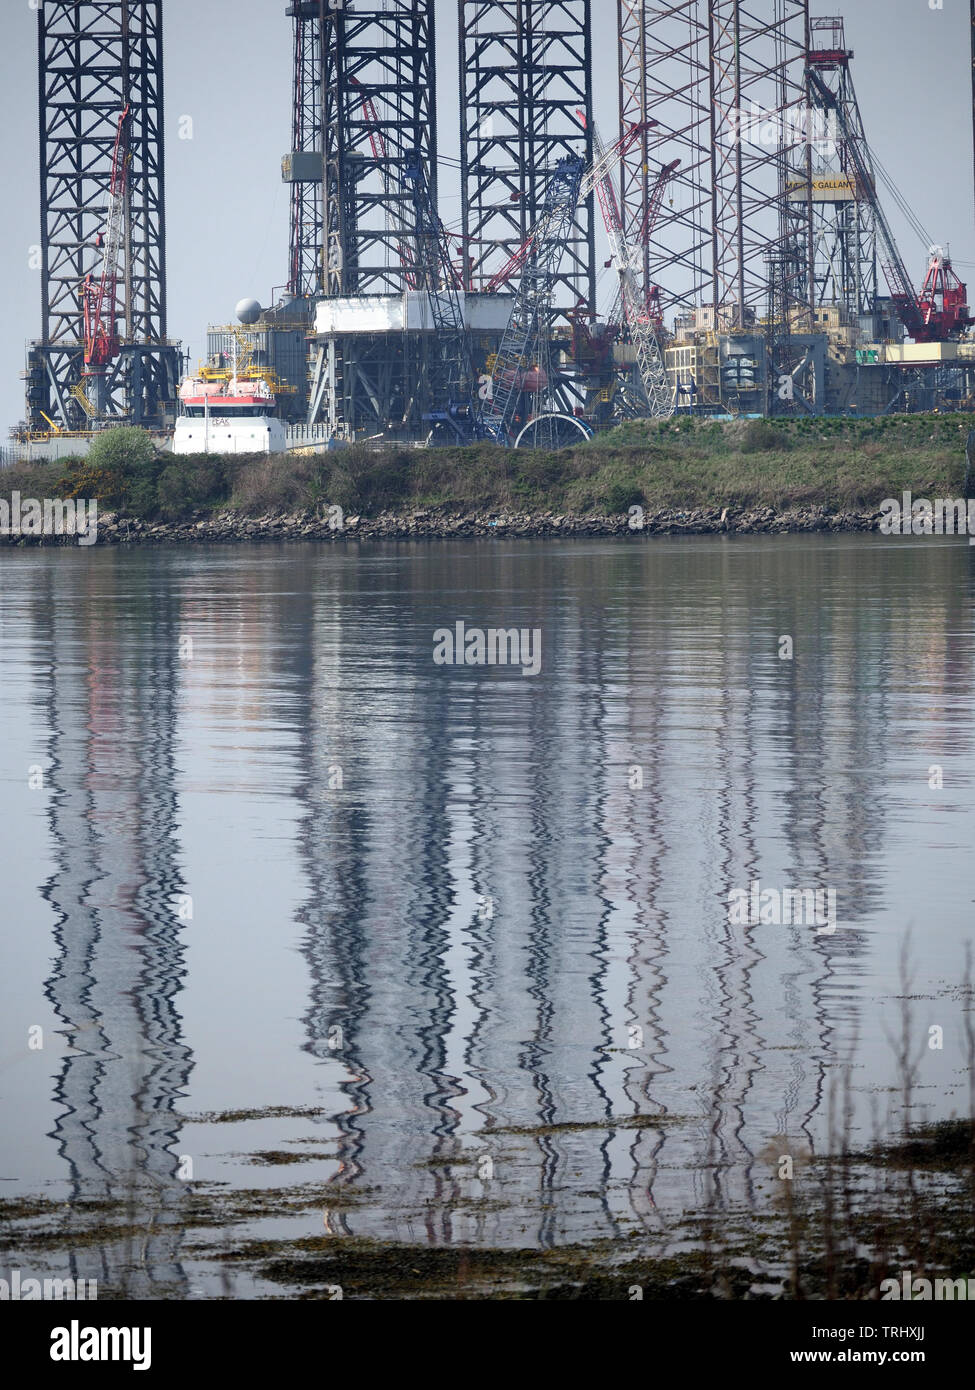 La riflessione di olio-rig portali nei paesi industrializzati area portuale di Dundee, sul Firth of Tay in Scozia, Regno Unito Foto Stock